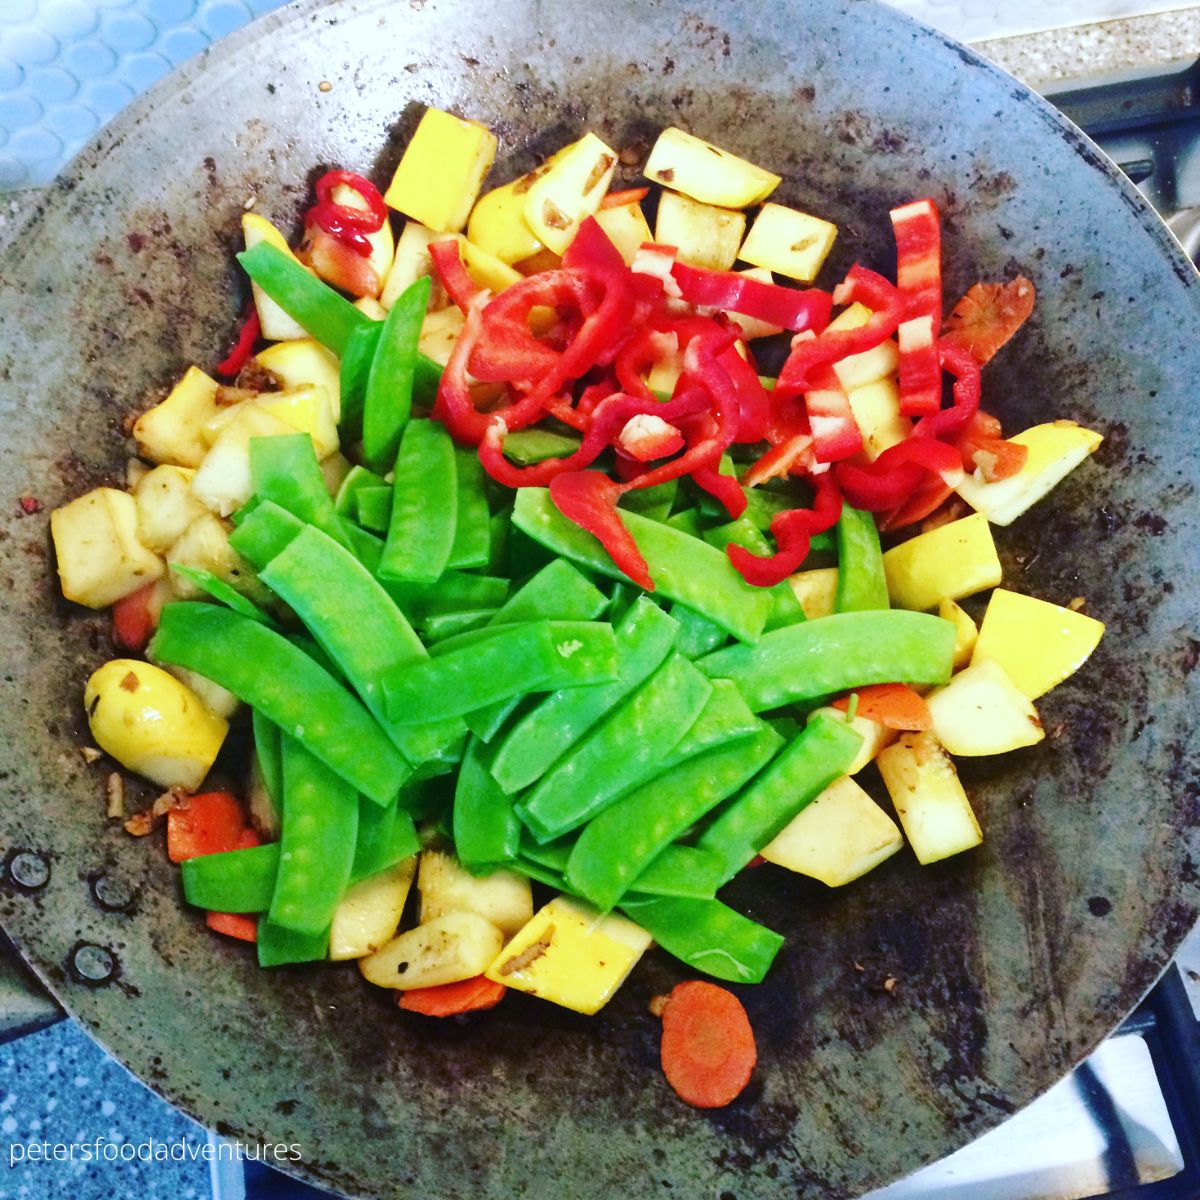 stir fried veggies